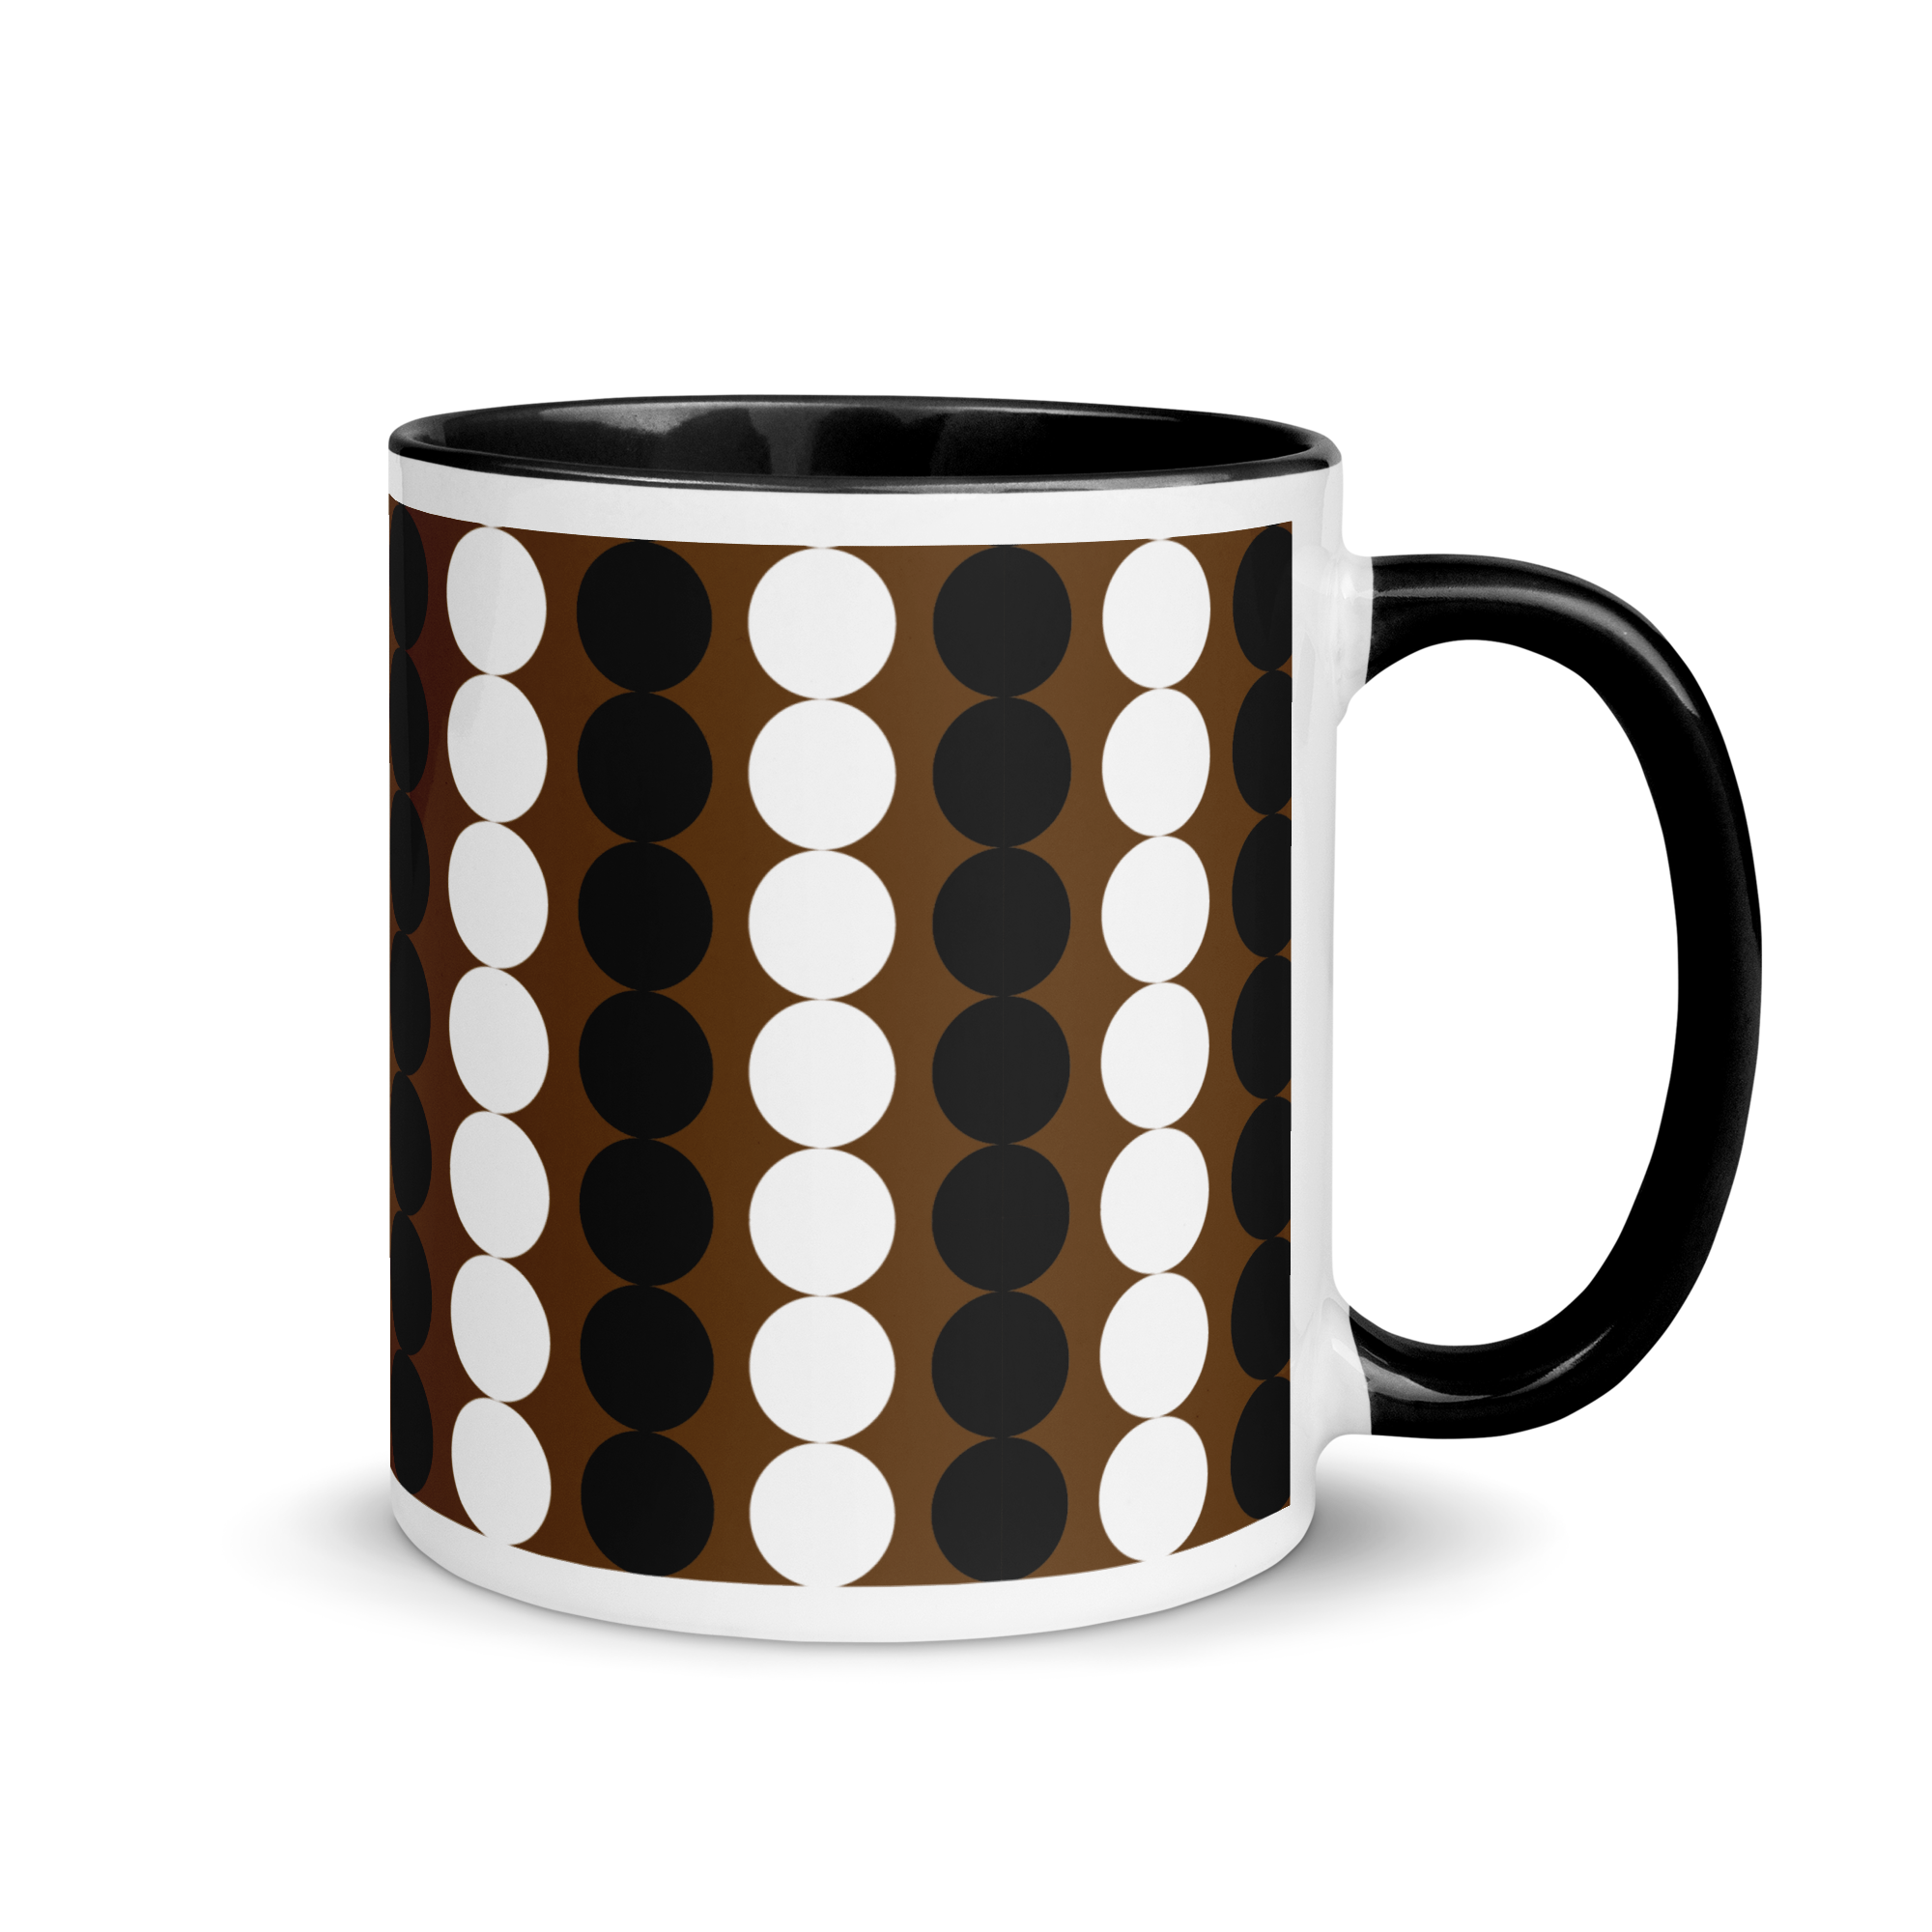 white-ceramic-mug-with-color-inside-black-11-oz-right-65e4724bc451e.png